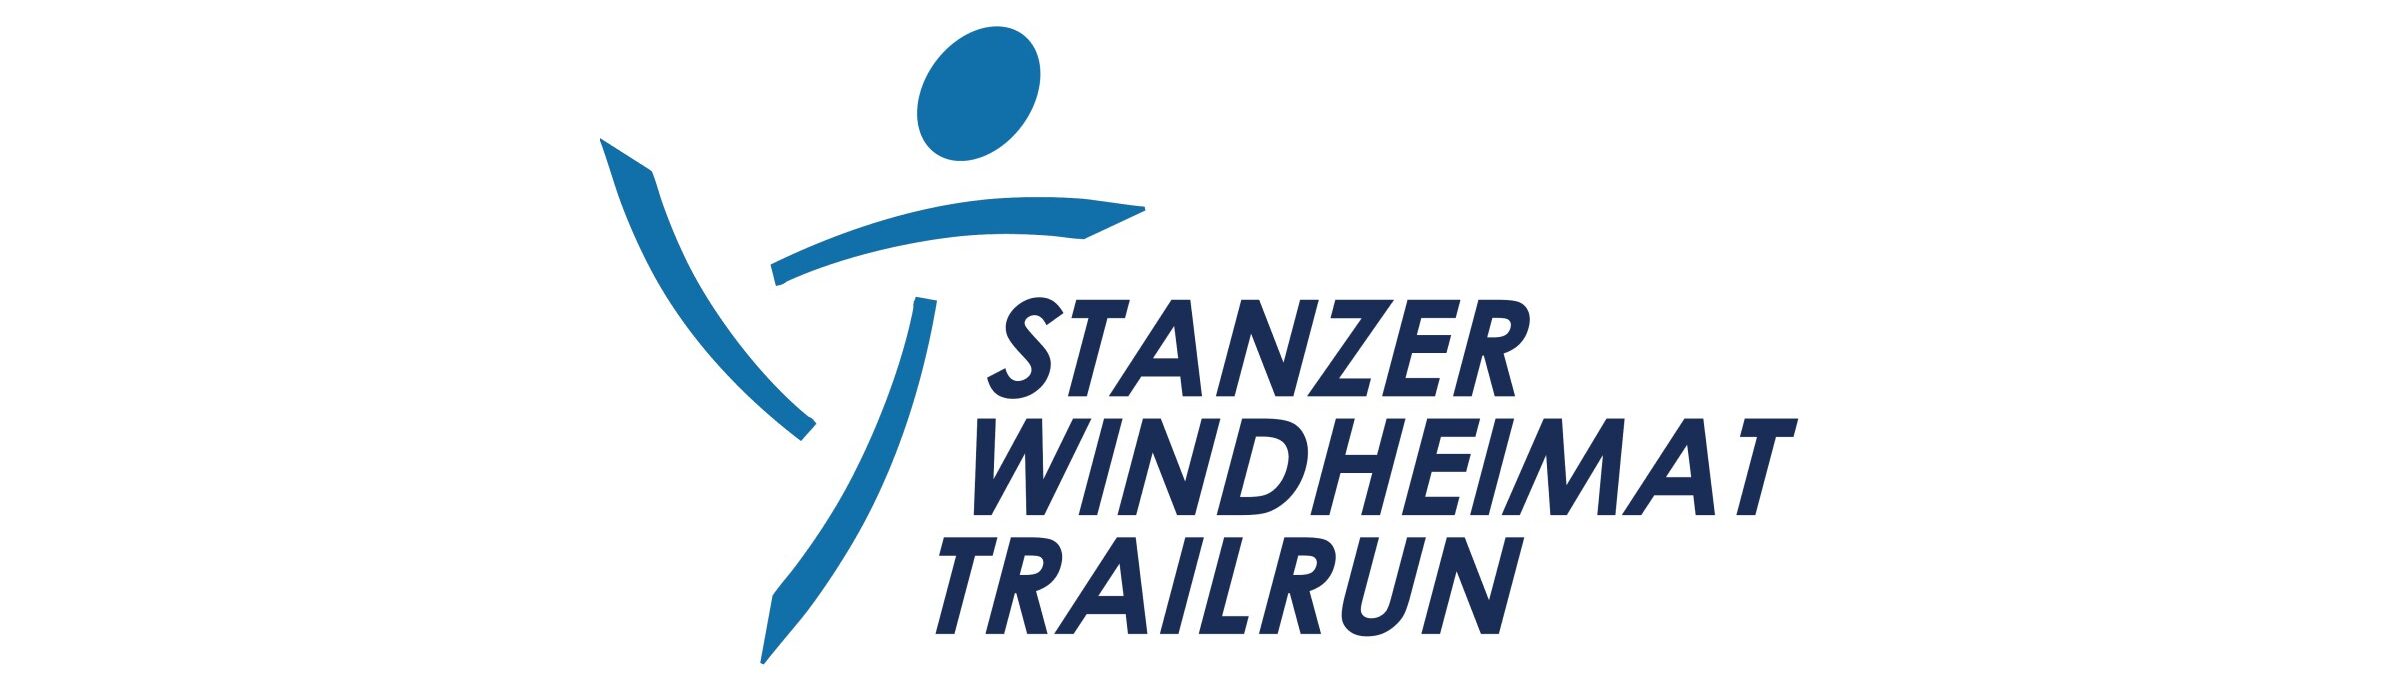 15. Stanzer Windheimat Trailrun